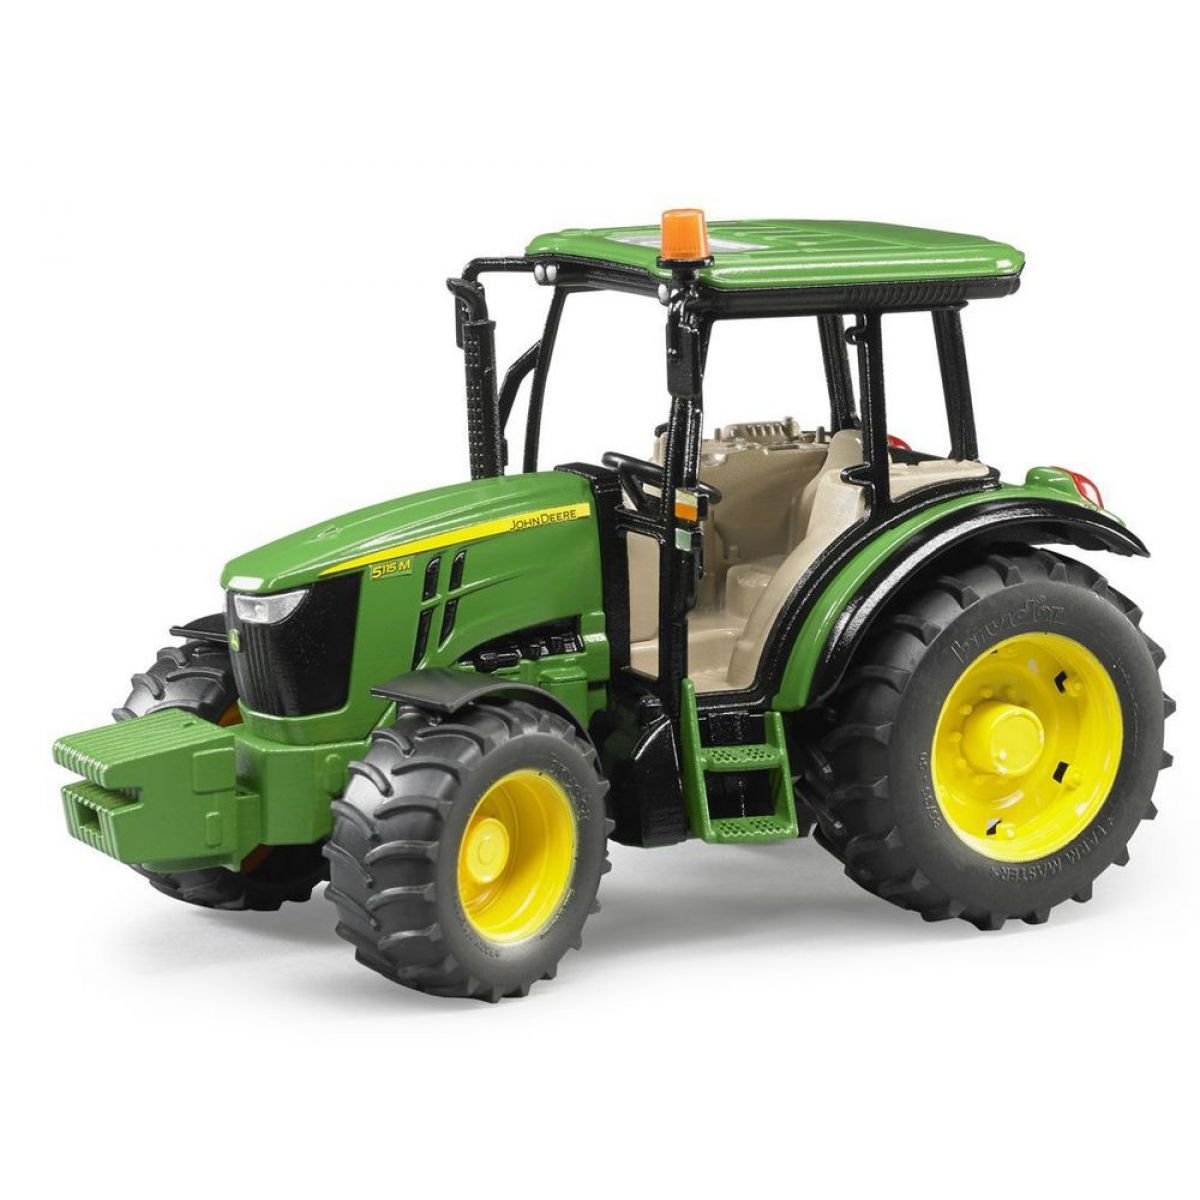 Bruder 2106 Traktor John Deere 5115 zelený 1:16